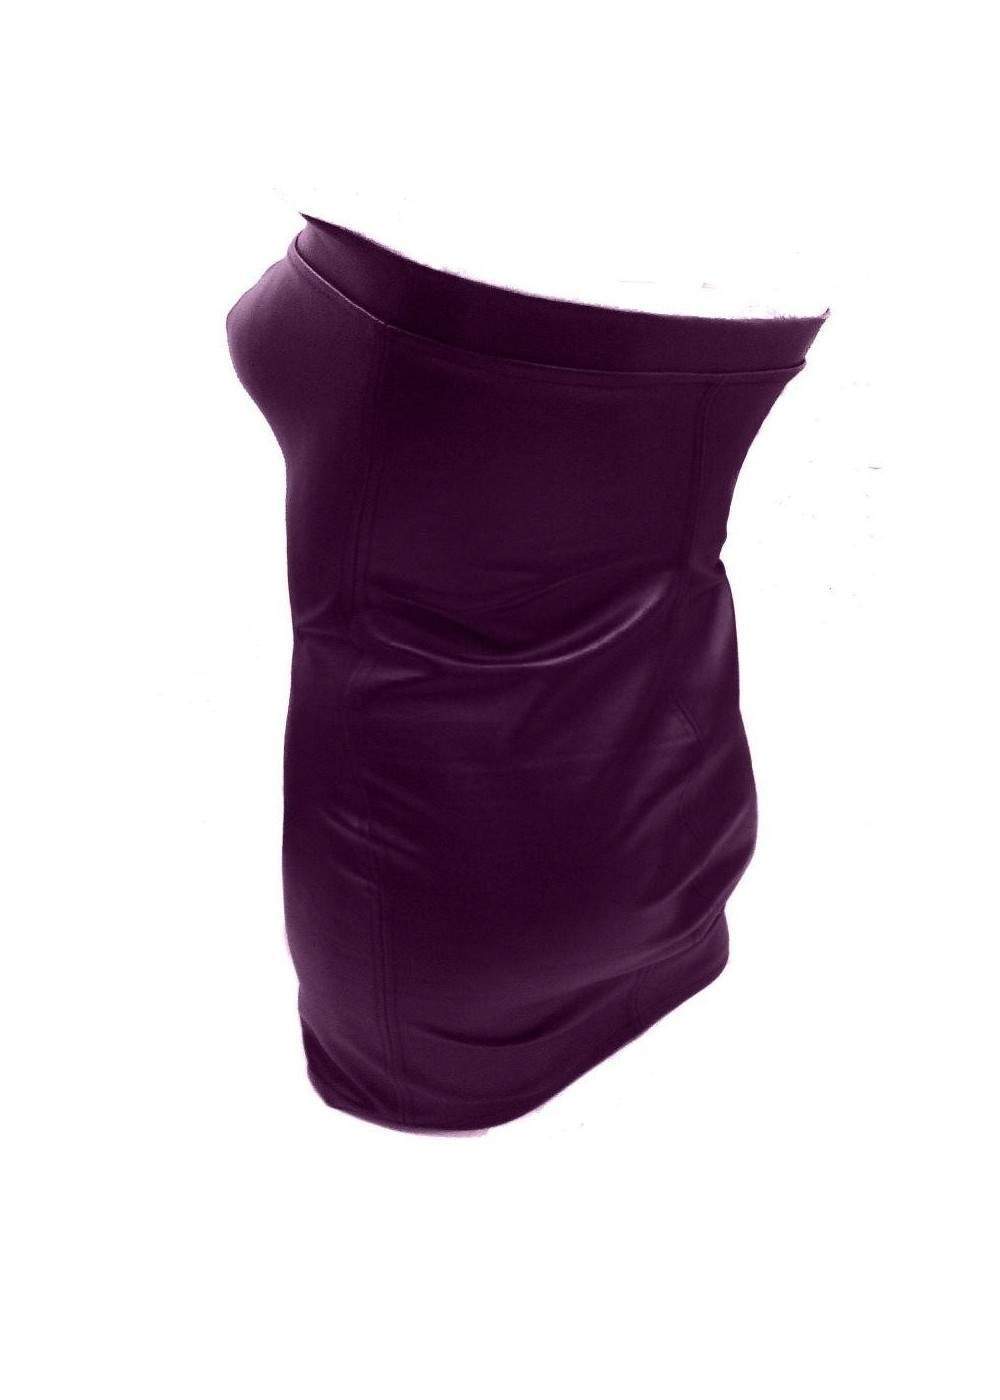 Vestido de cuero suave de diseño en color púrpura talla L - XXL (44... - Deutsche Produktion